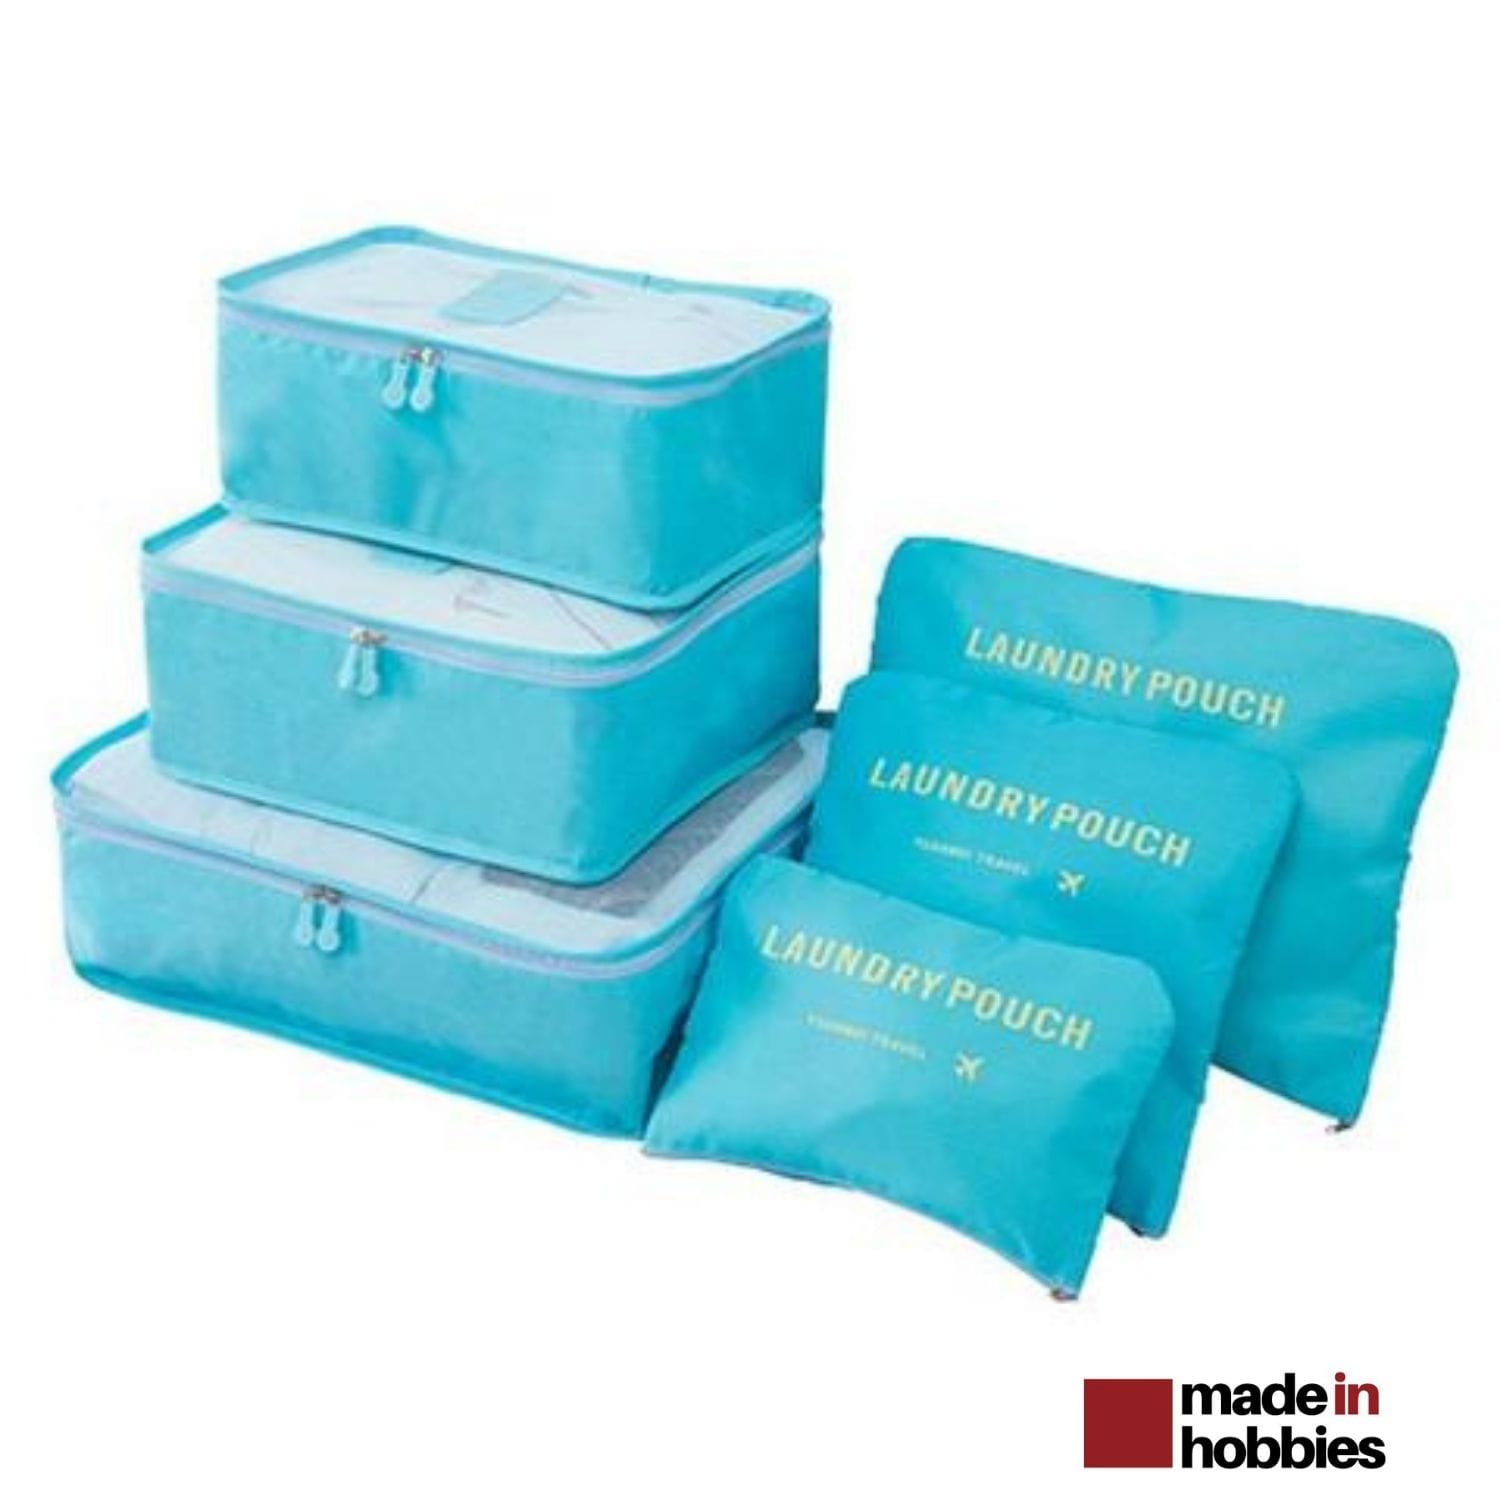 9 pièces dans le sac de rangement de voyage ensemble de vêtements rangement  armoire valise sac unisexe multifonctionnel emballage cube sac